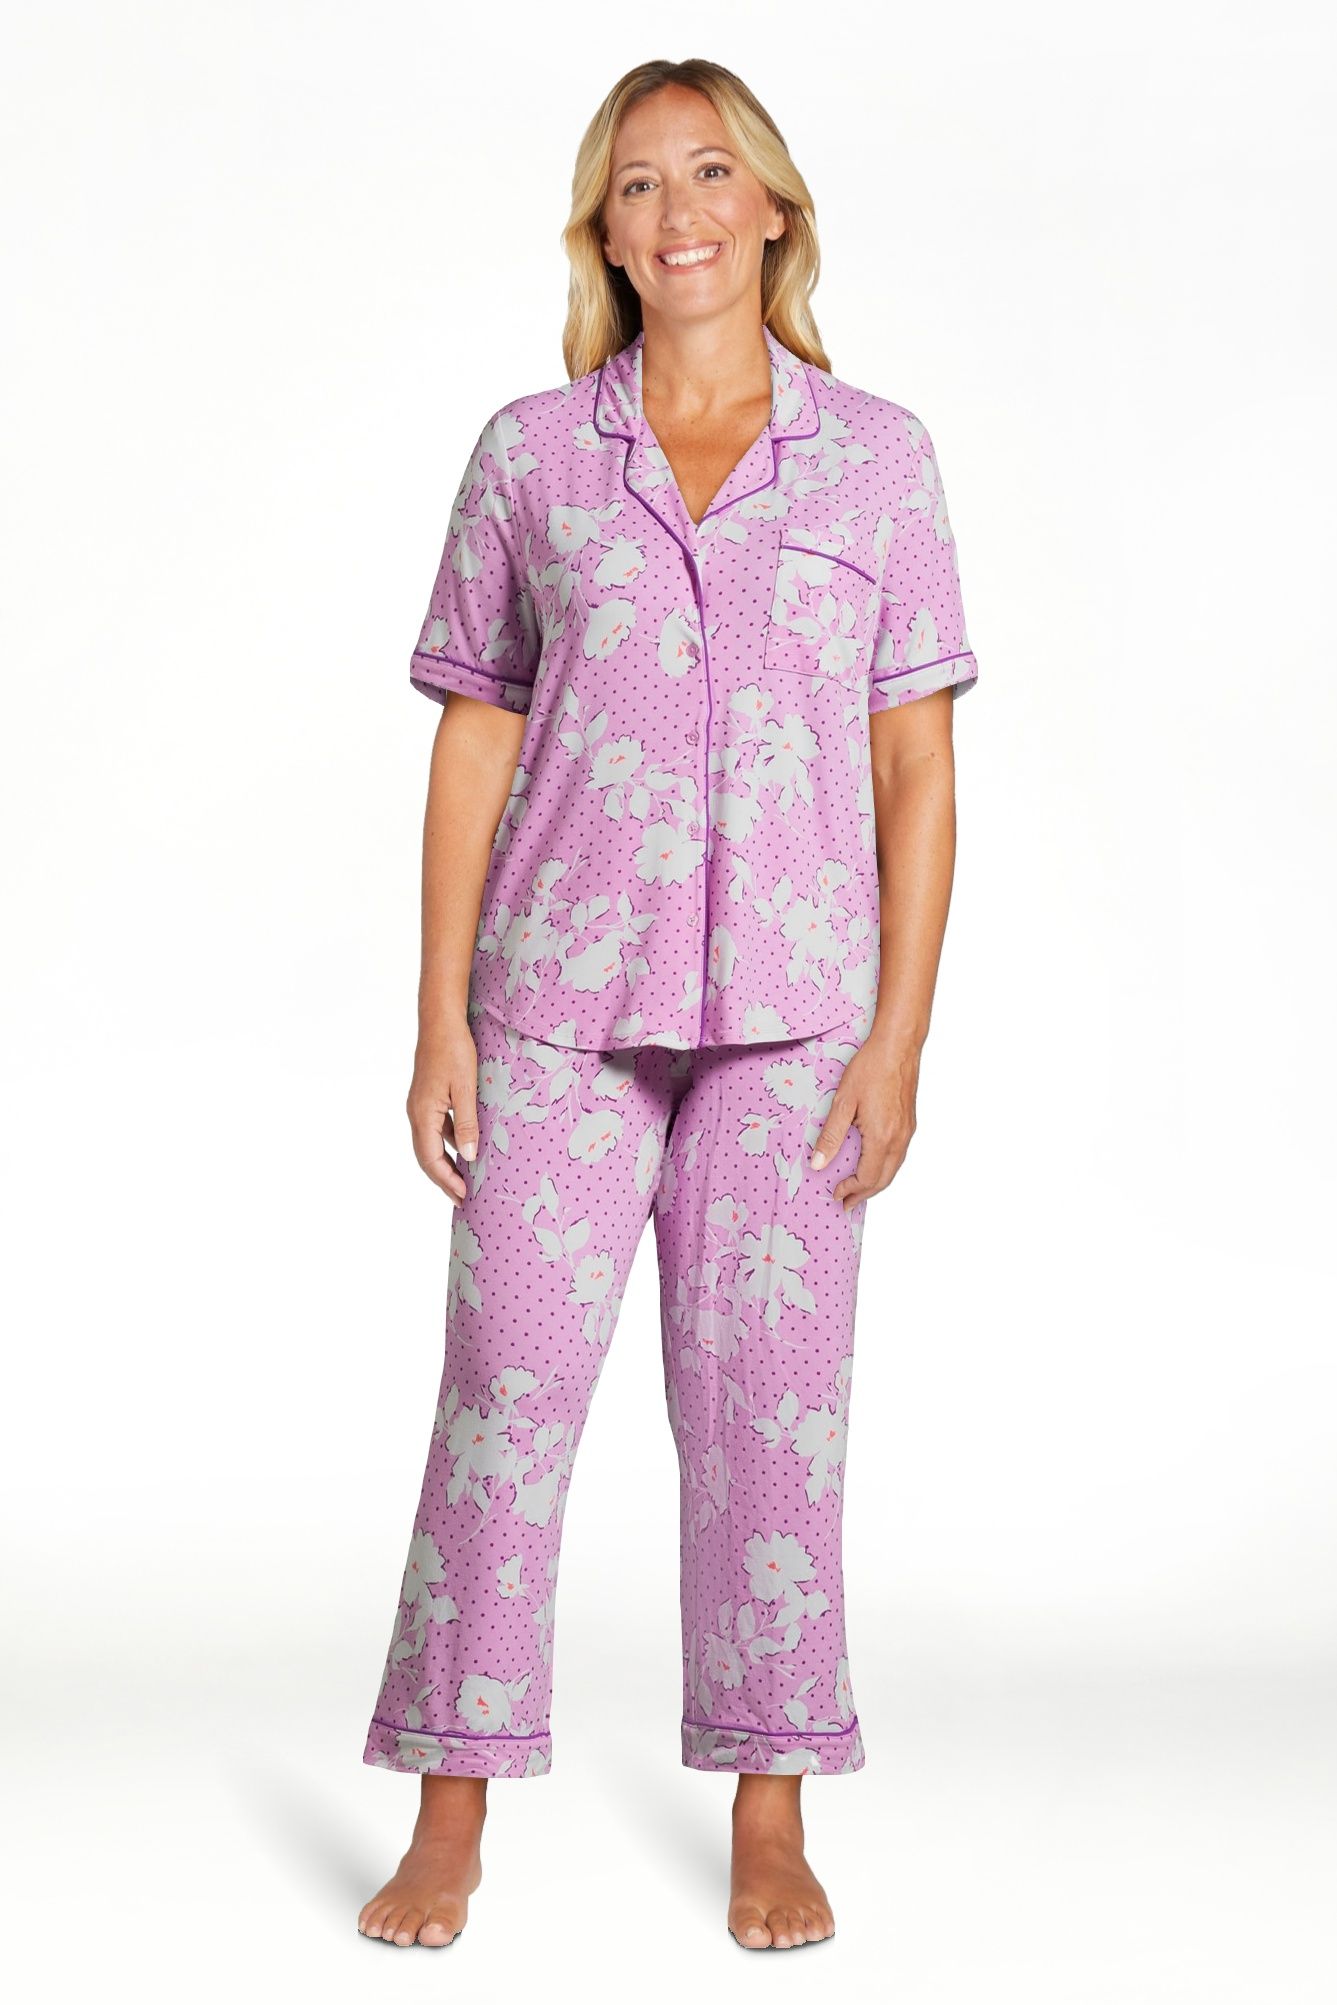 Joyspun Women's Knit Notch Collar Top and Capri Pants Pajama Set, 2-Piece, Sizes S to 3X | Walmart (US)